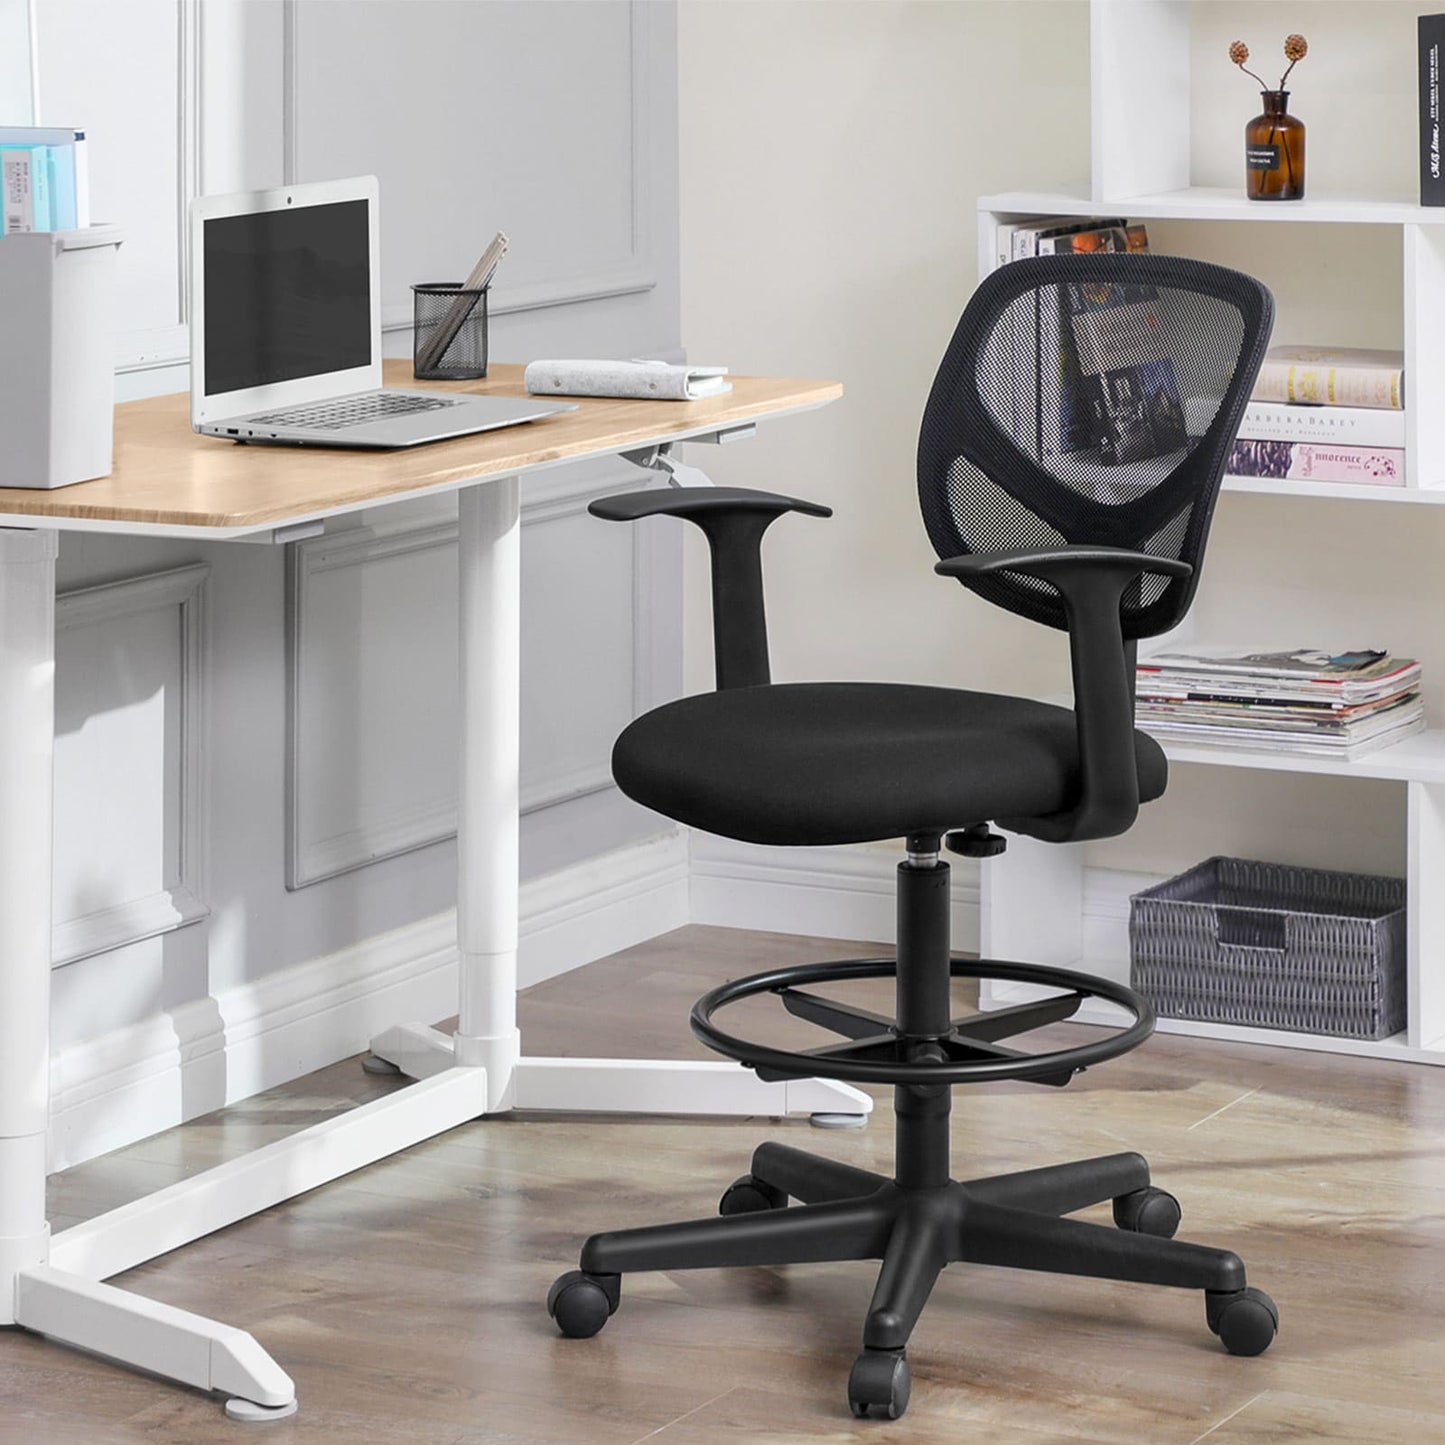 Chaise d'ordinateur ergonomique, réglable en hauteur, repose-pieds, chaise de bureau, rotative à 360 degrés- Songmics